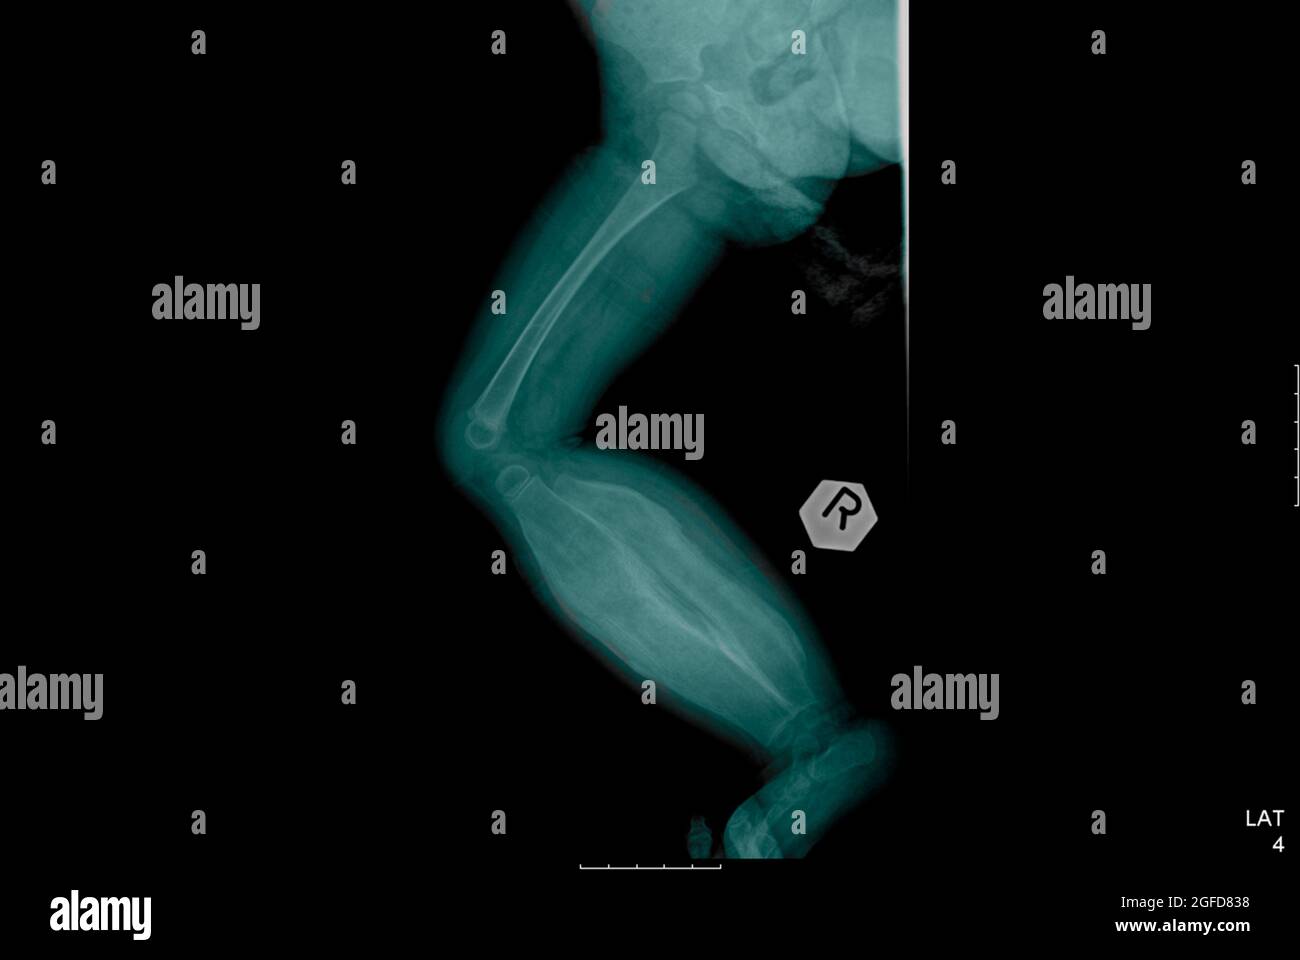 Radiographie d'un nourrisson de 11 mois souffrant d'une hyperostose corticale d'Infantile (maladie de Caffey) Banque D'Images